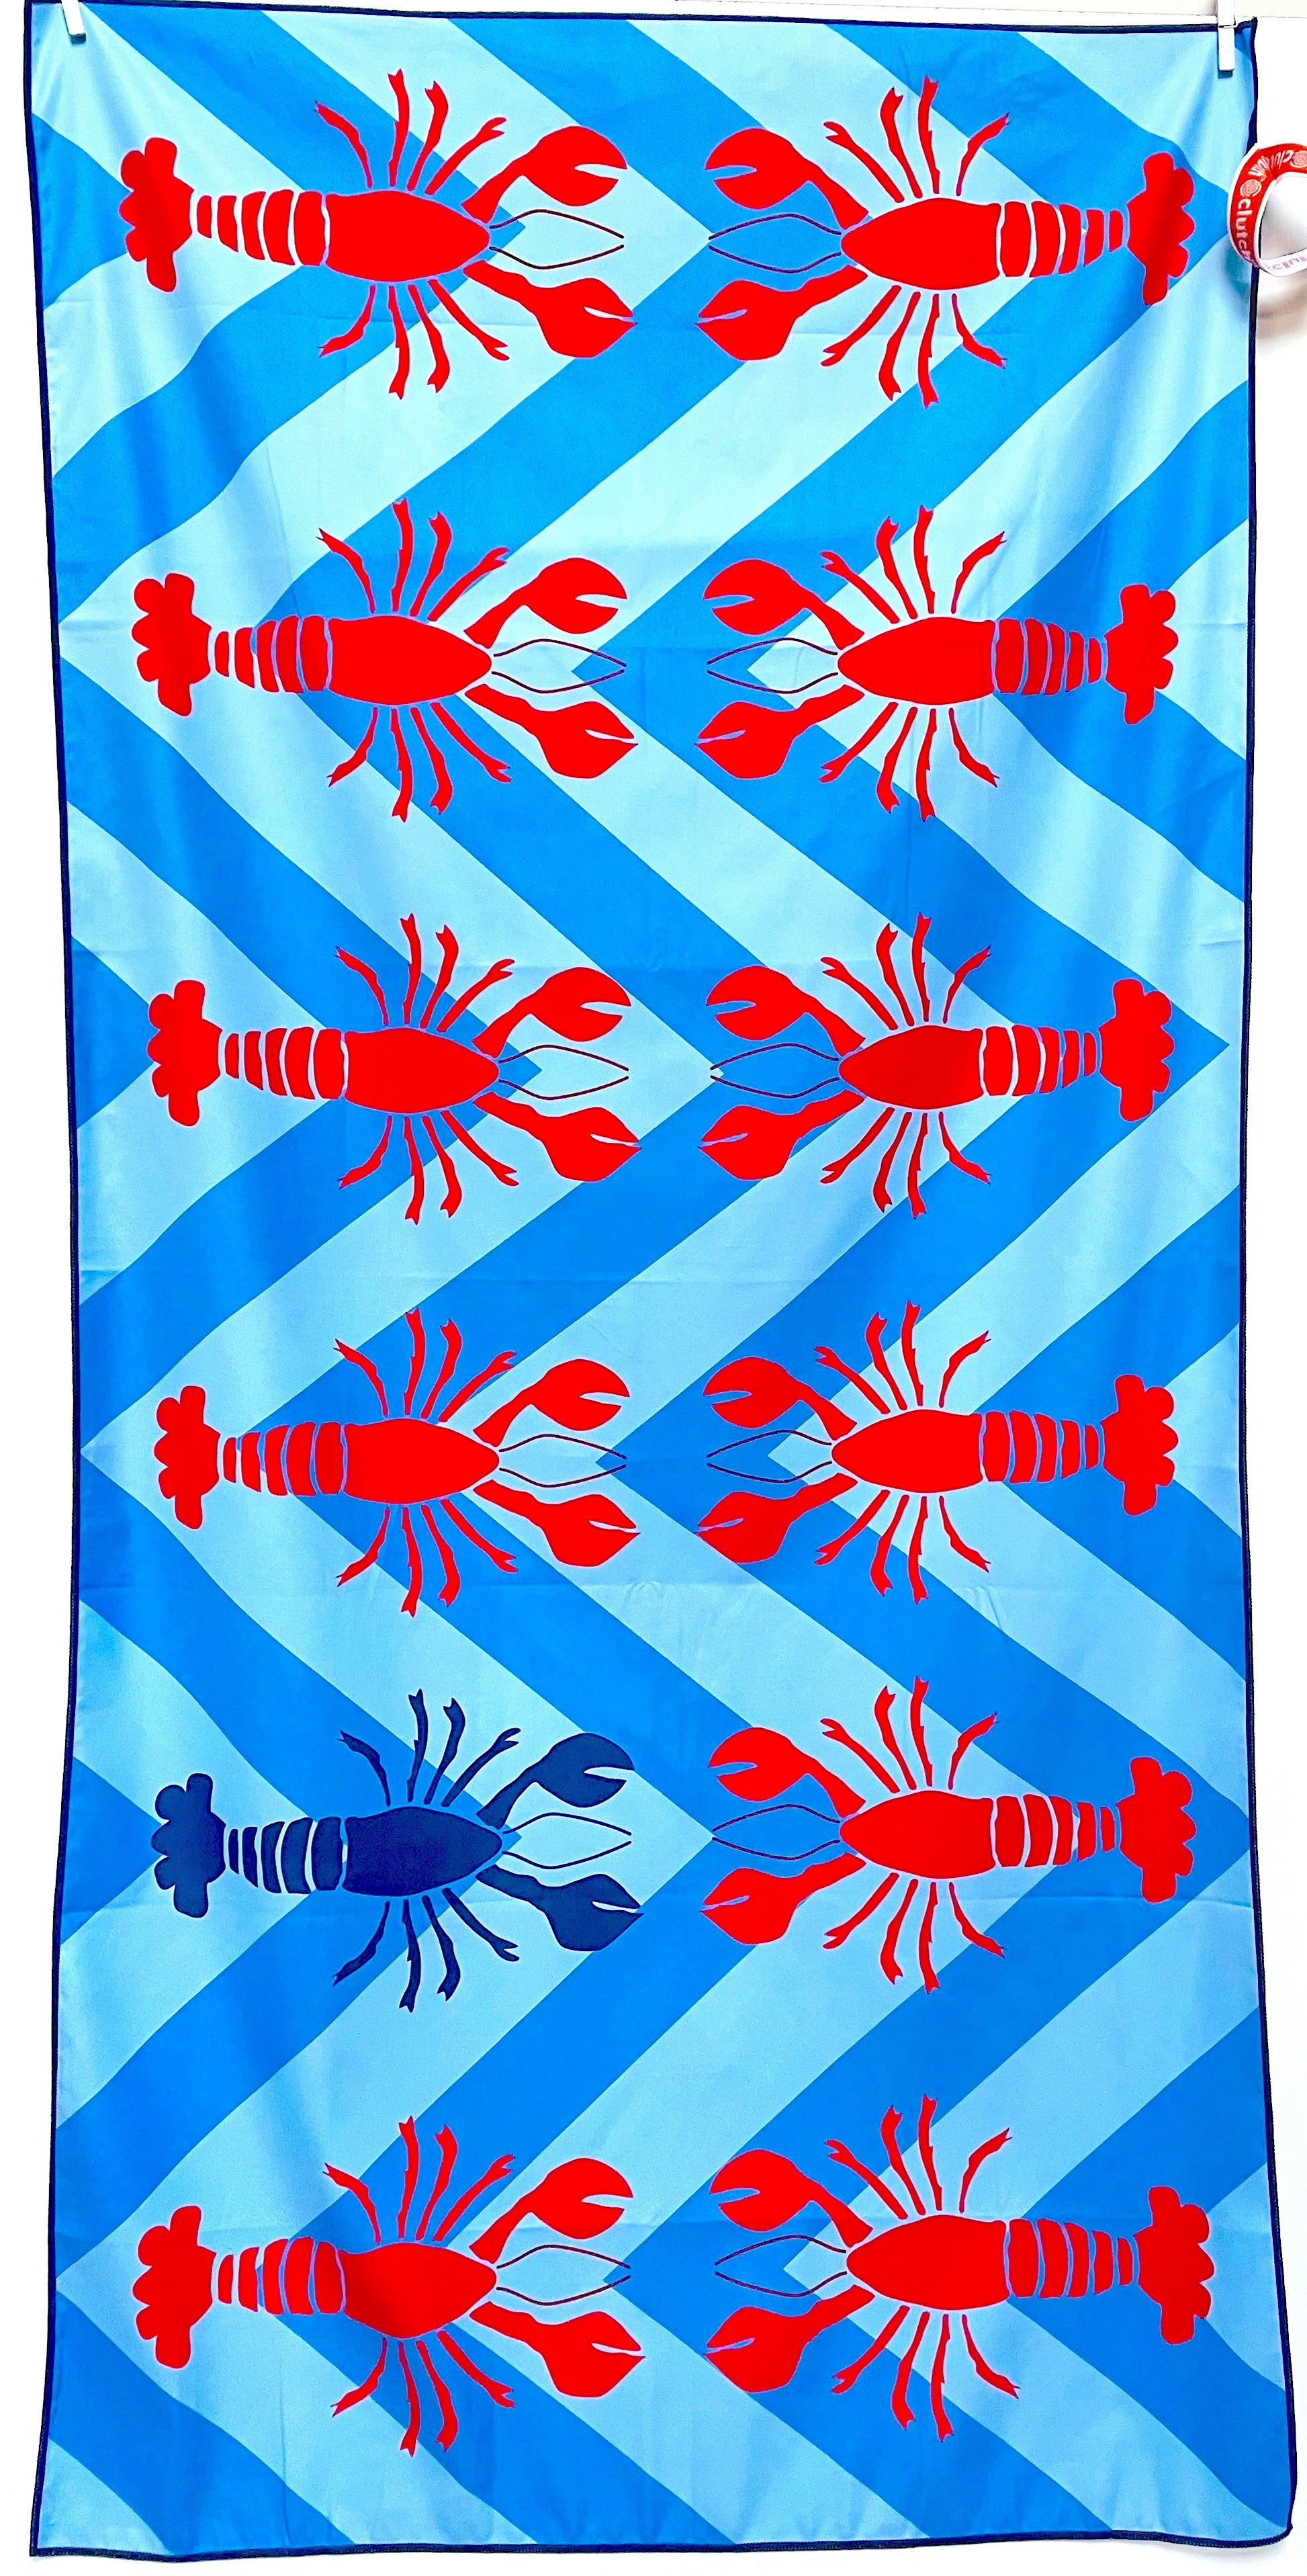 Lobster Design Paper Towel Holder - Choose Color